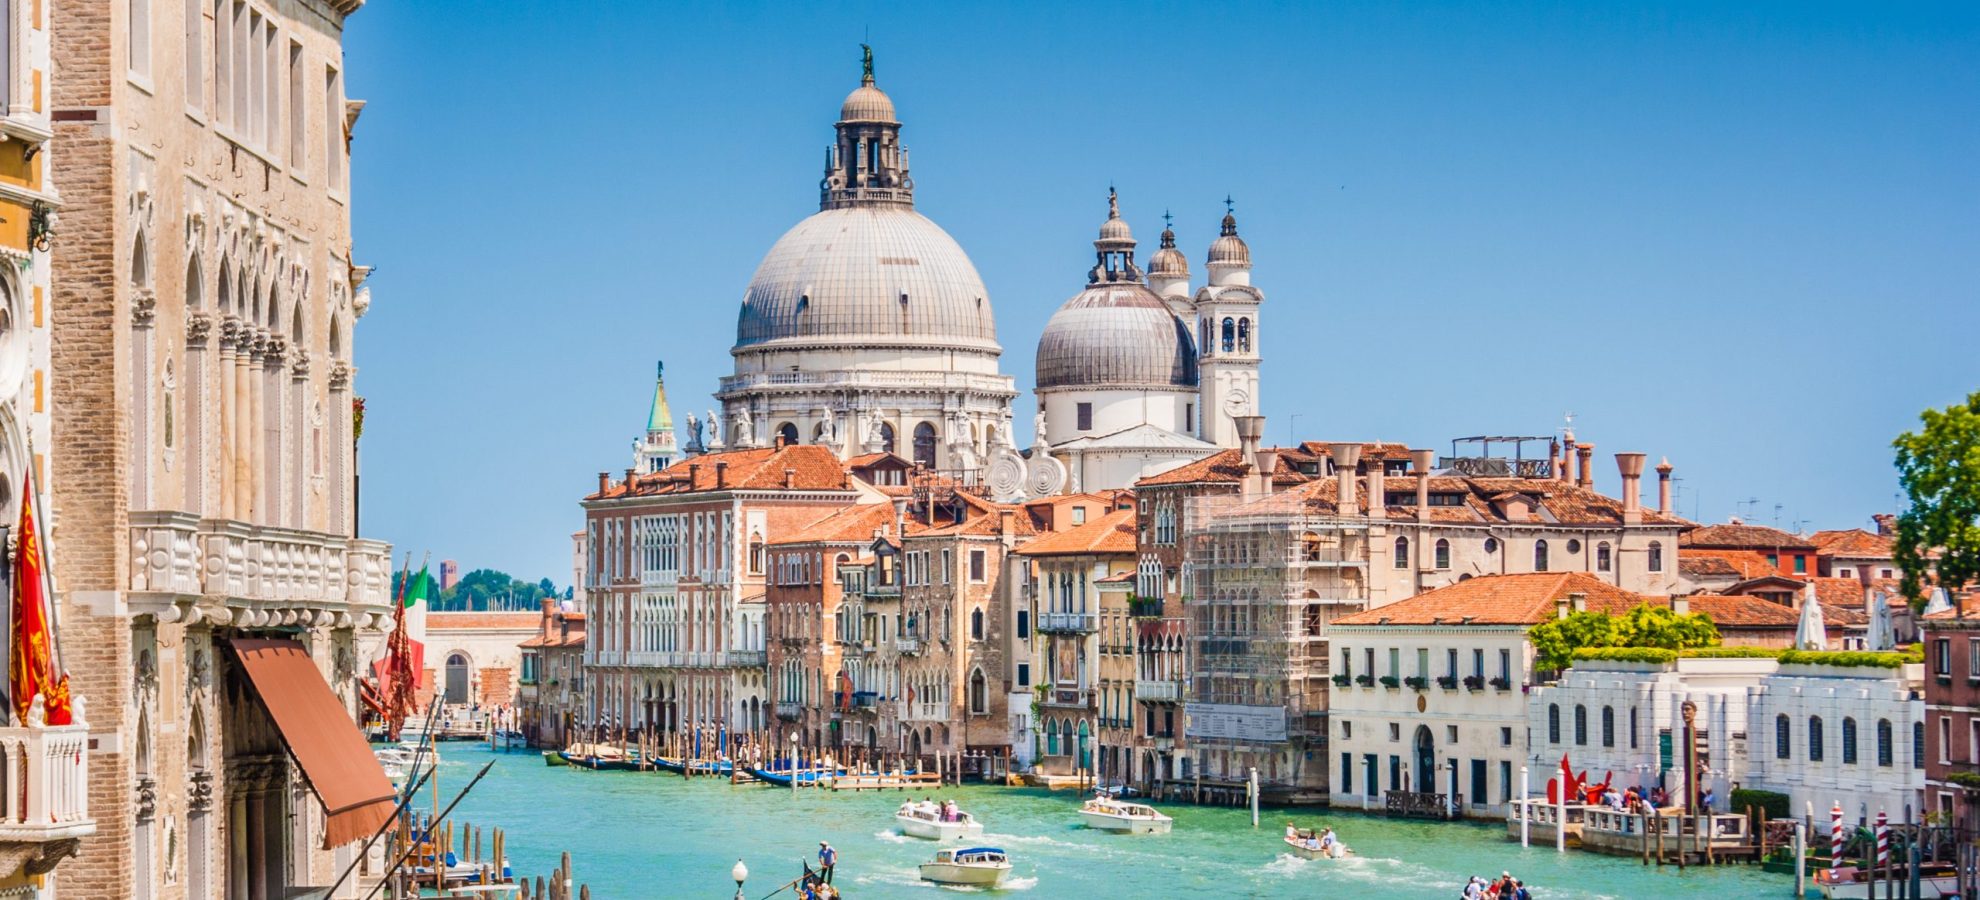 View of Canal Grande with Basilica di Santa Maria della Salute in the background, Venice